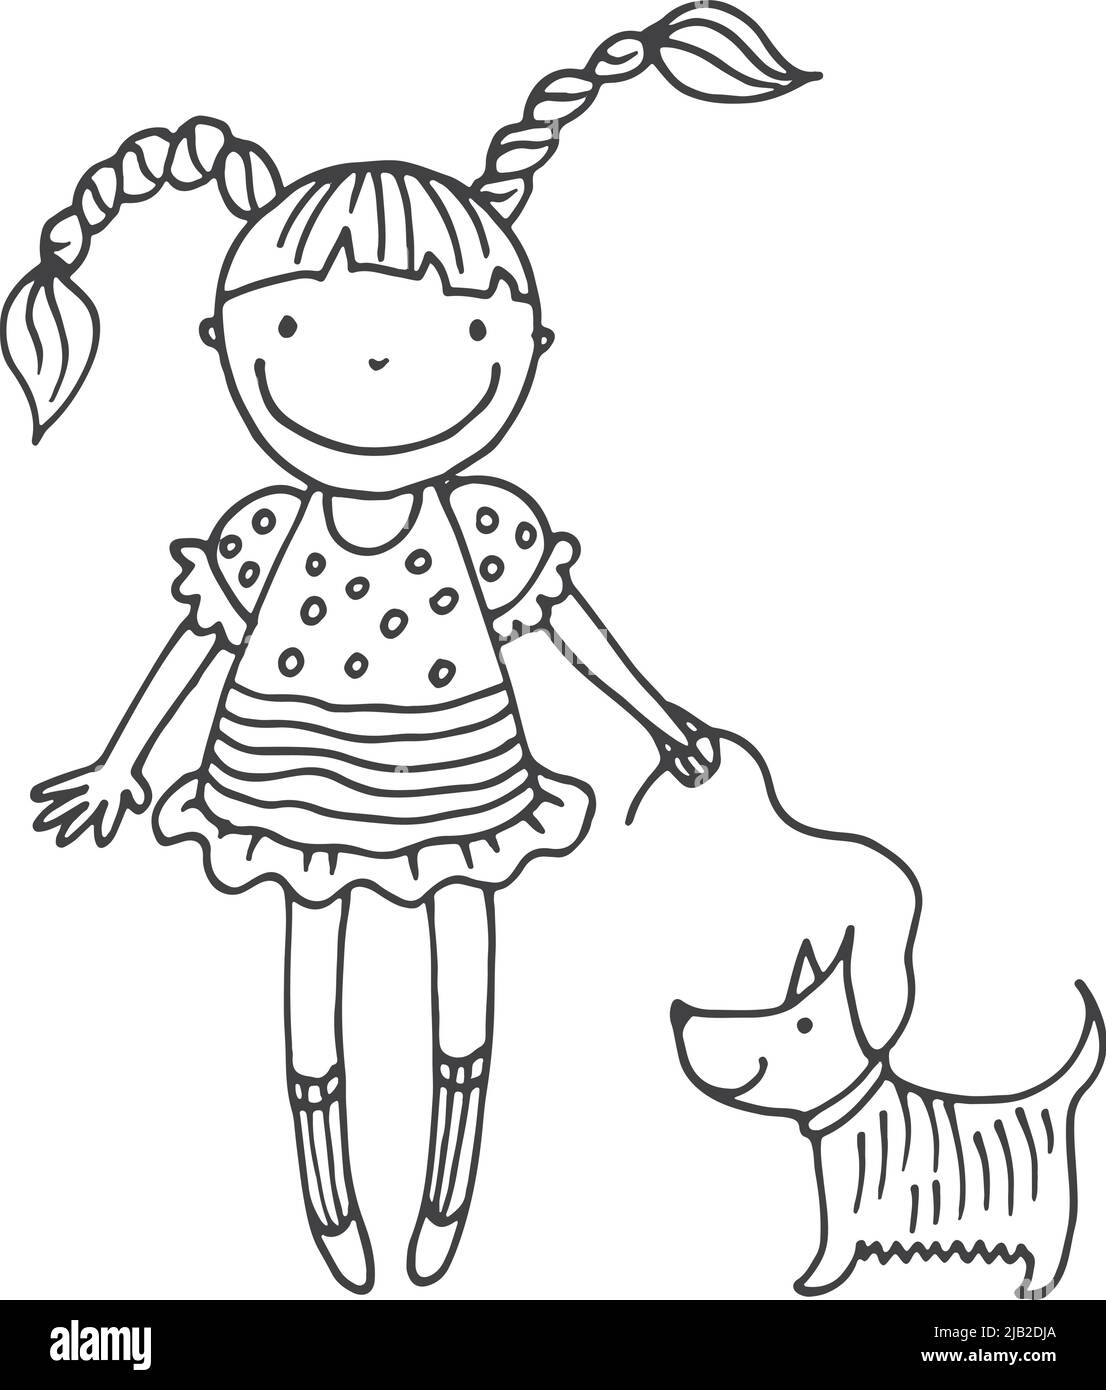 only-gnat528: Un dessin d'enfant d'un chien qui porte une